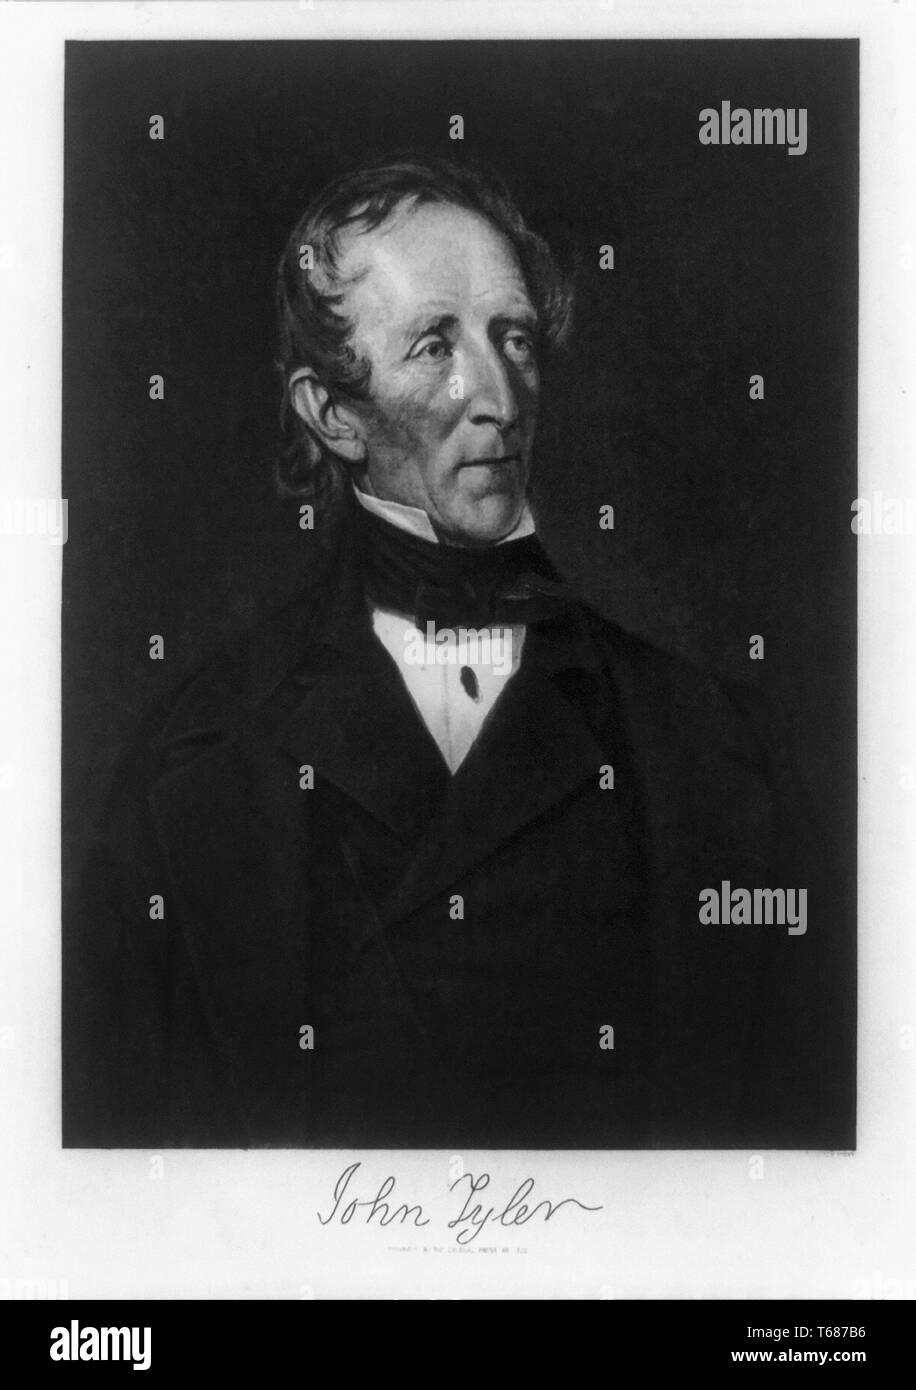 John Tyler (1790-1862), 10e président des États-Unis, demi-longueur, l'art du portrait Reproduction de peinture de George Peter Alexander Healy, la presse coloniale, N.Y., 1902 Banque D'Images